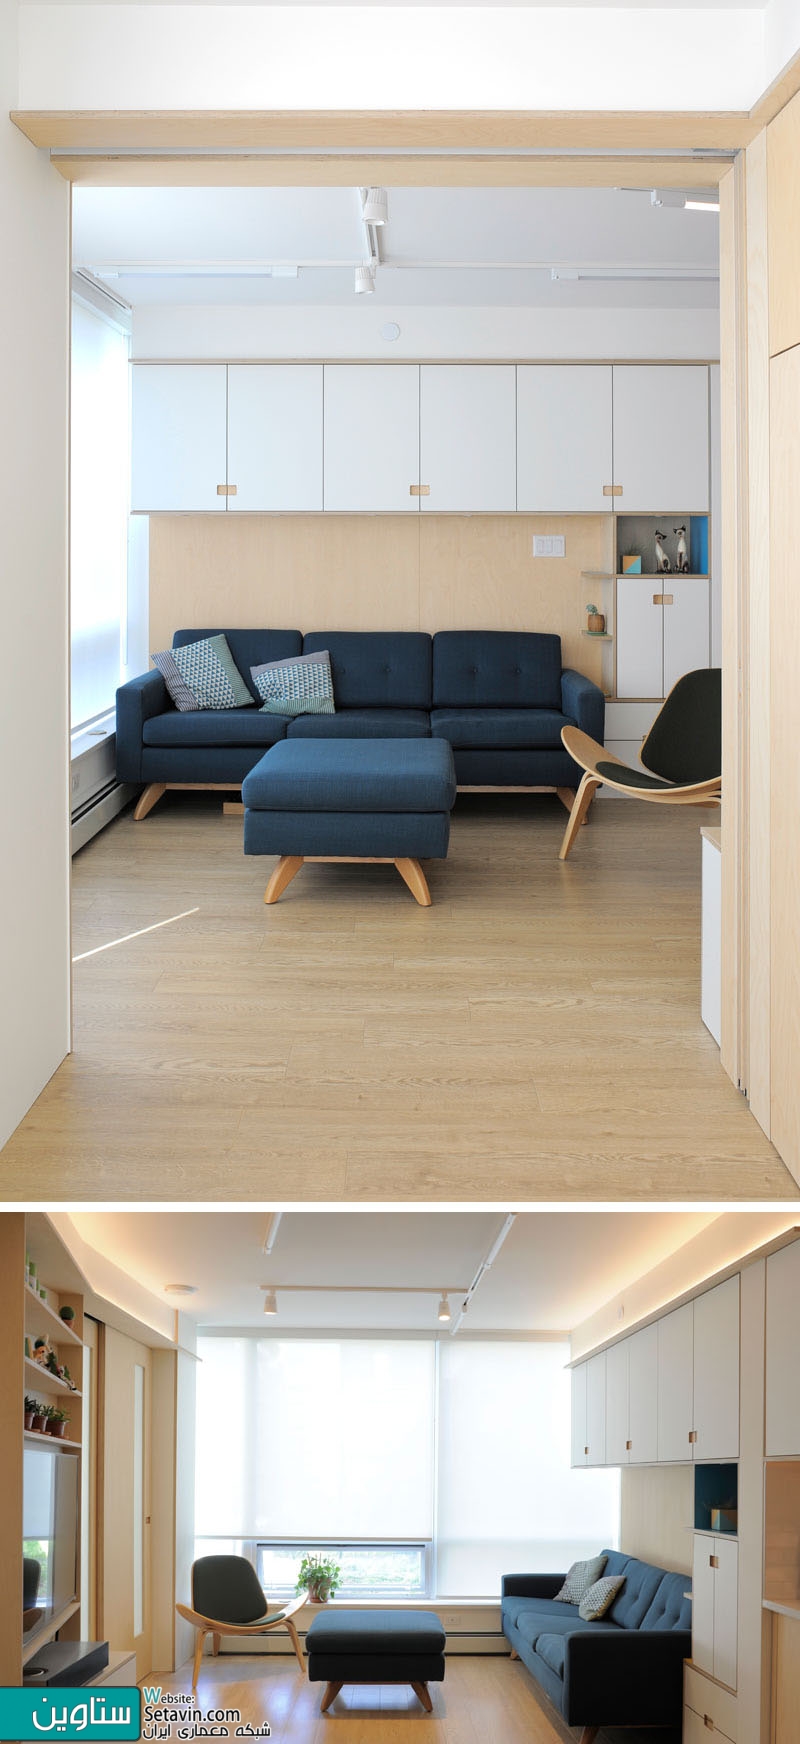 مجموعه ای از راه حلهای خلاقانه در طراحی داخلی این آپارتمان کوچک